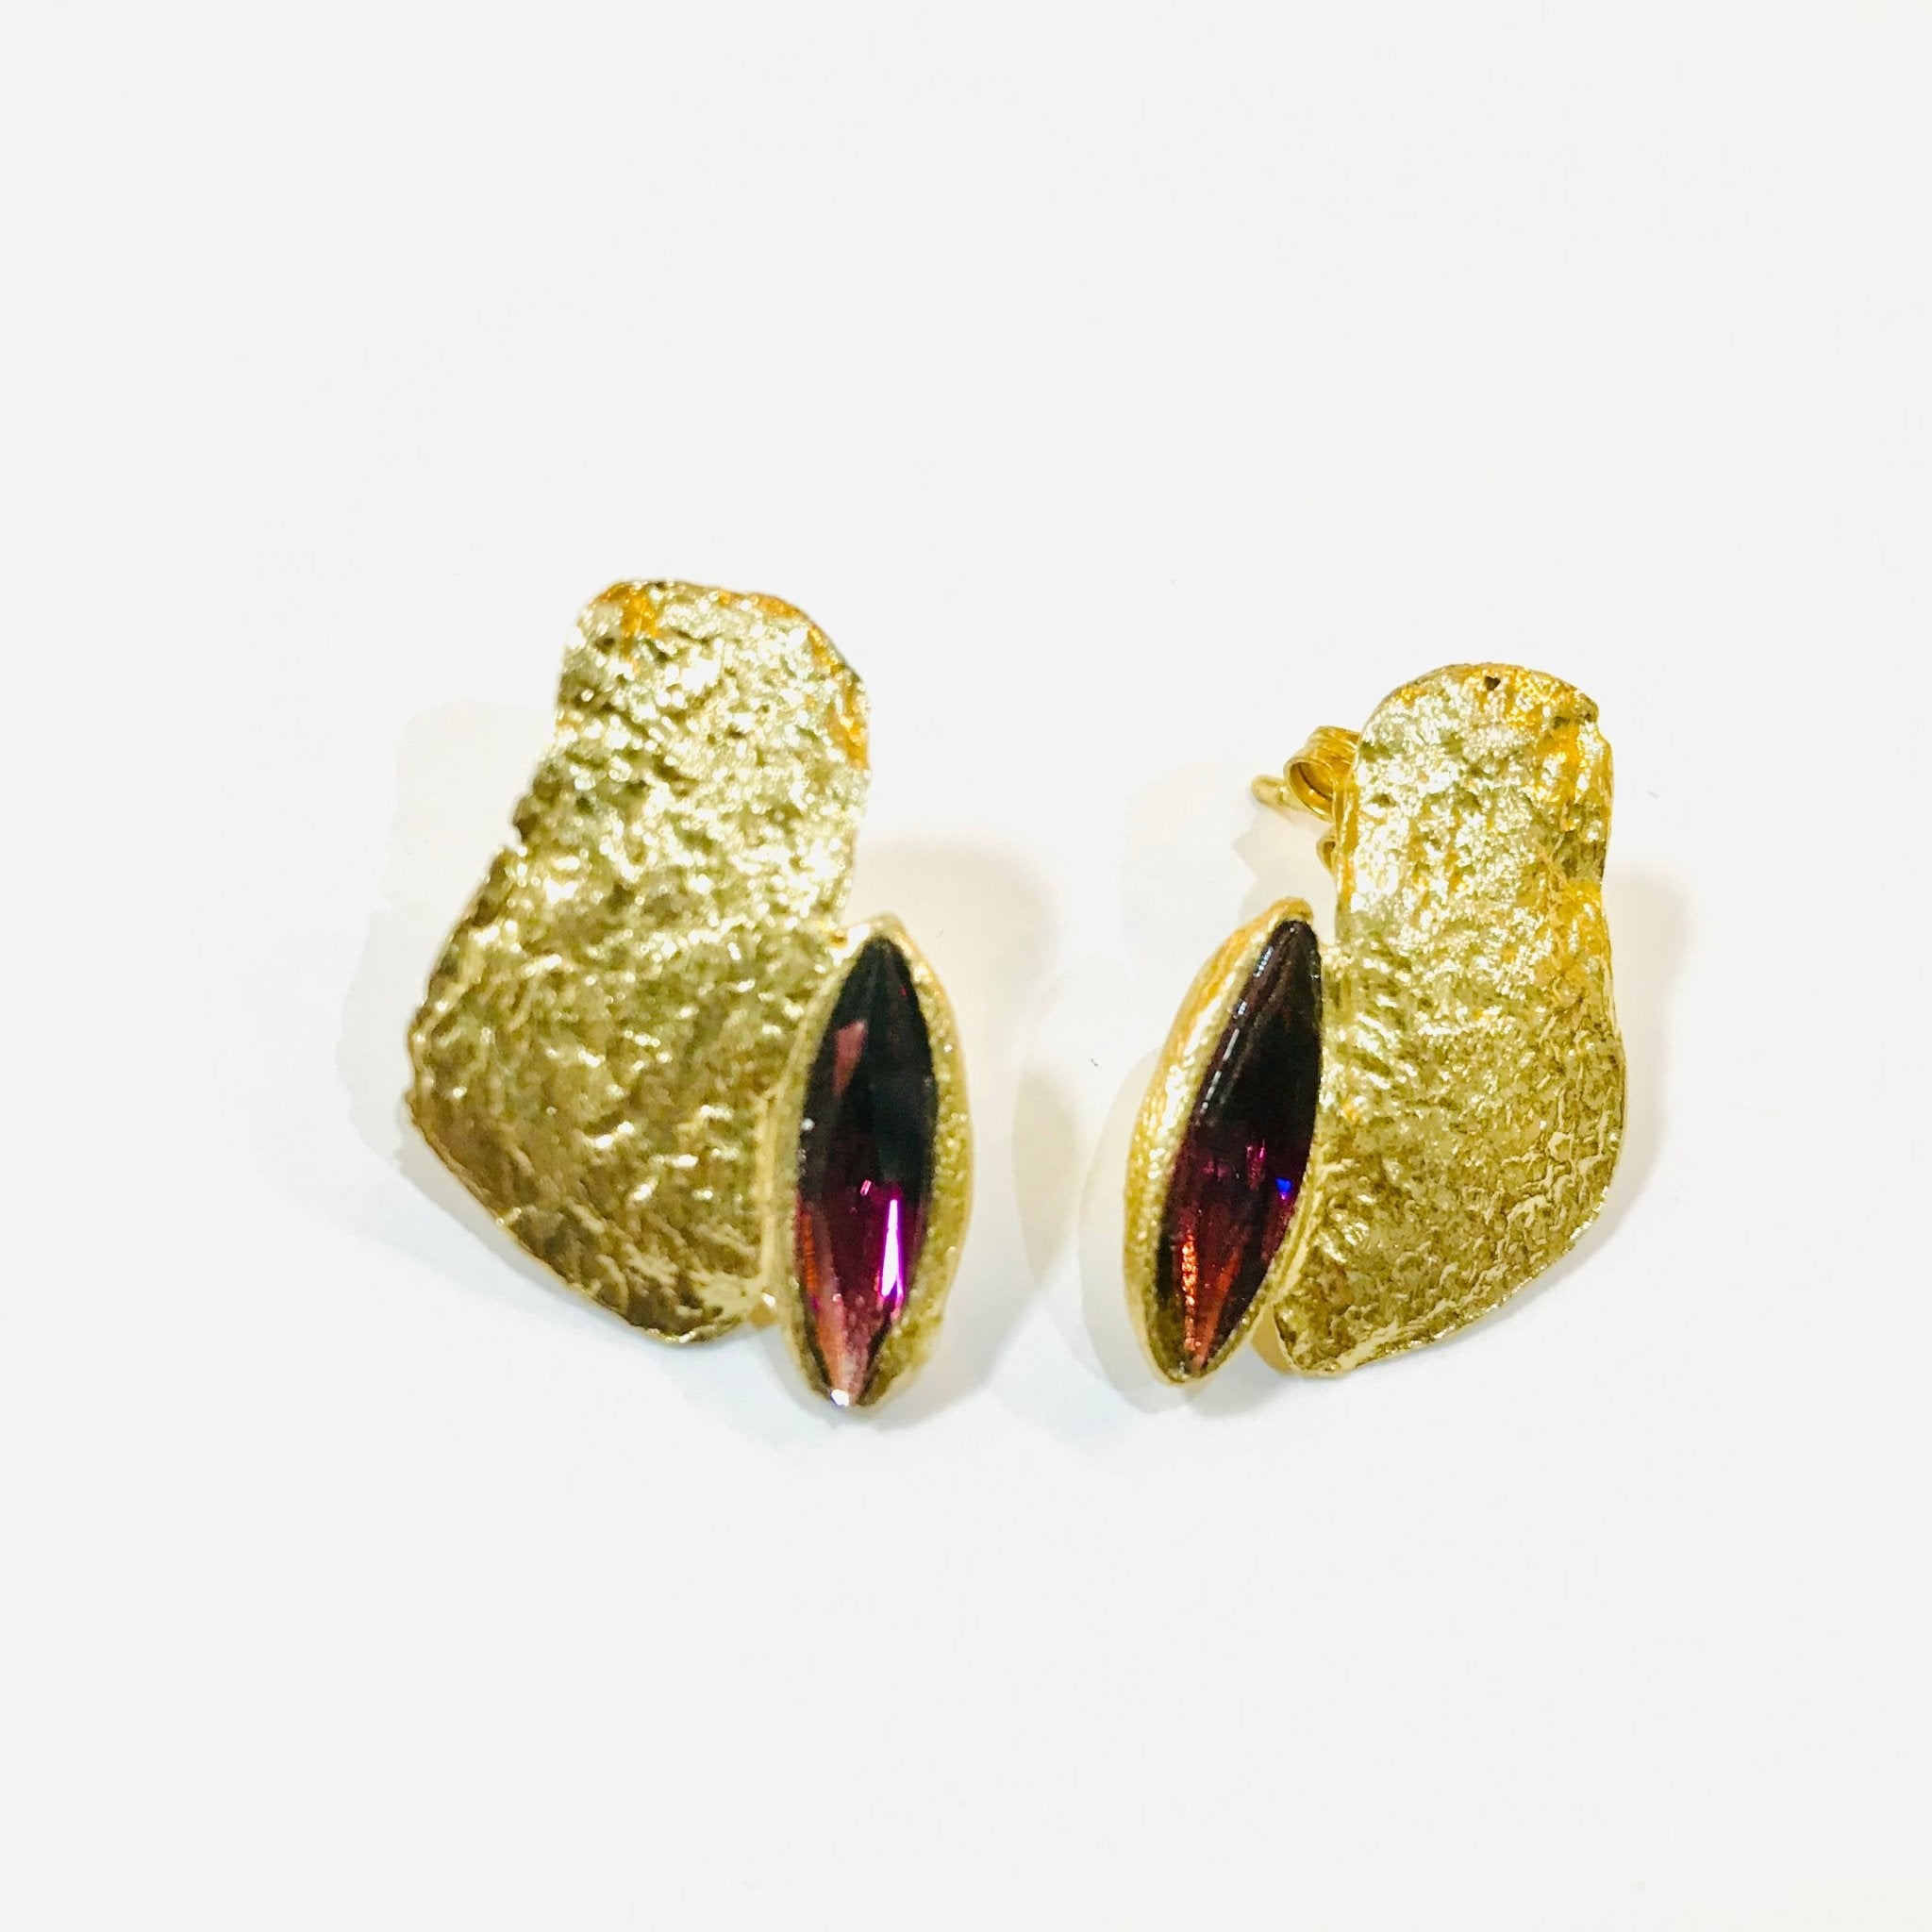 Bronze Purple Earrings - The Nancy Smillie Shop - Art, Jewellery & Designer Gifts Glasgow